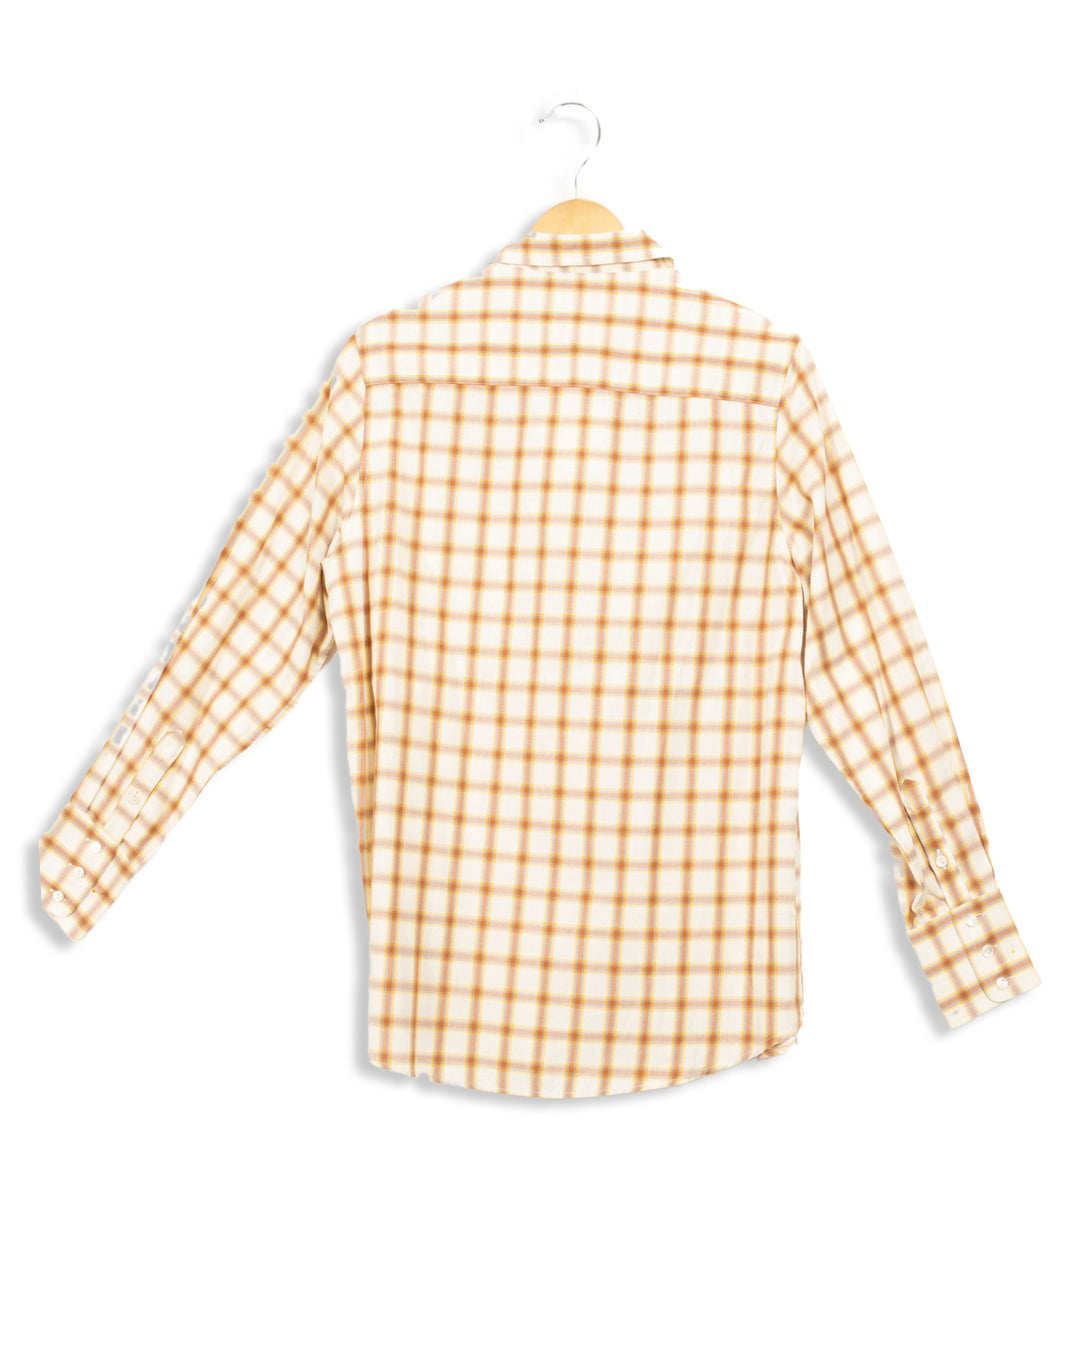 Chemise beige à carreaux marrons - 36